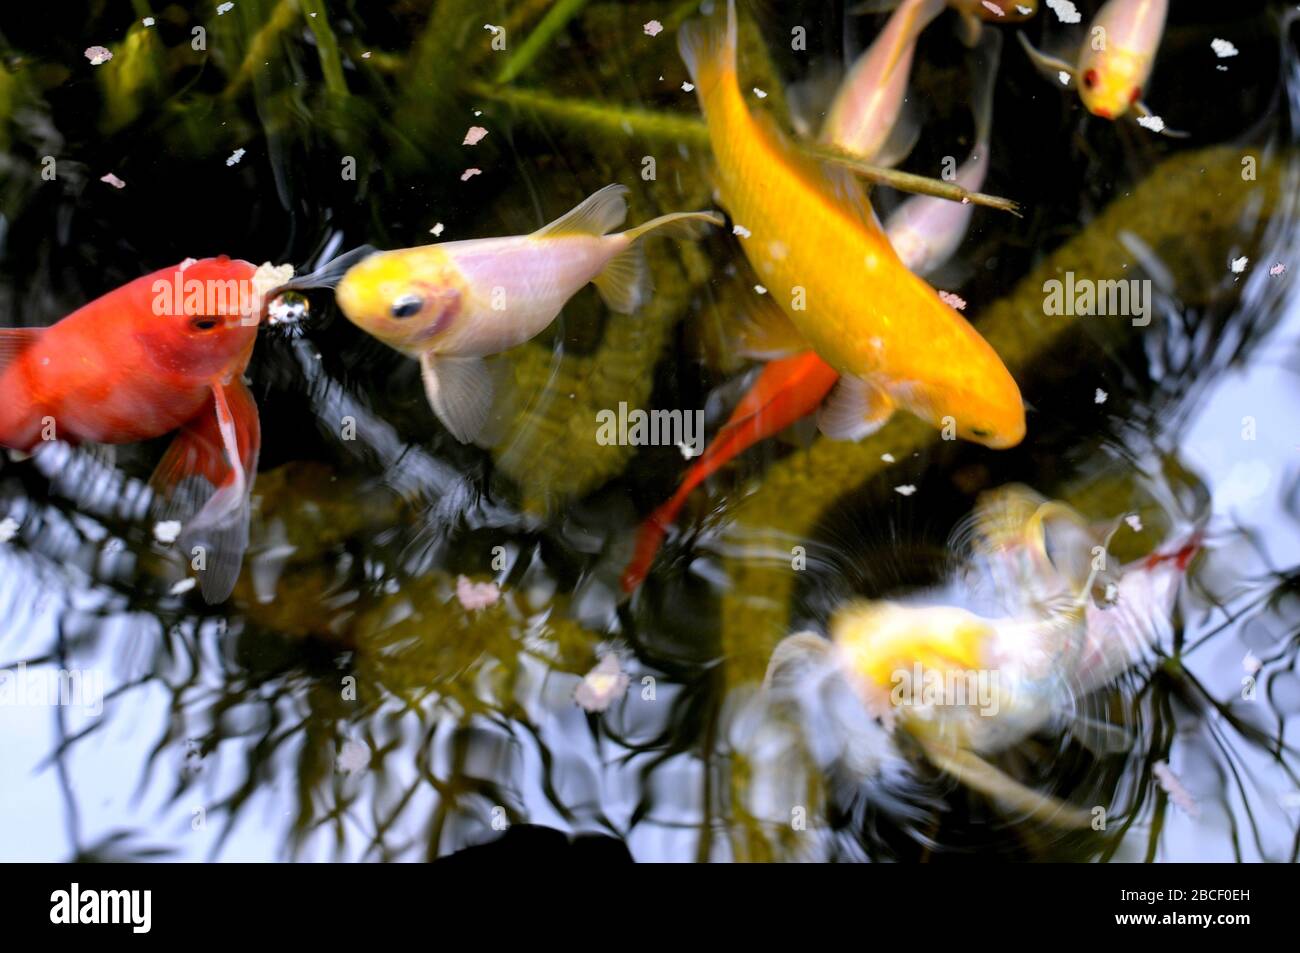 Colorful fish, Aquarium goldfish Stock Photo